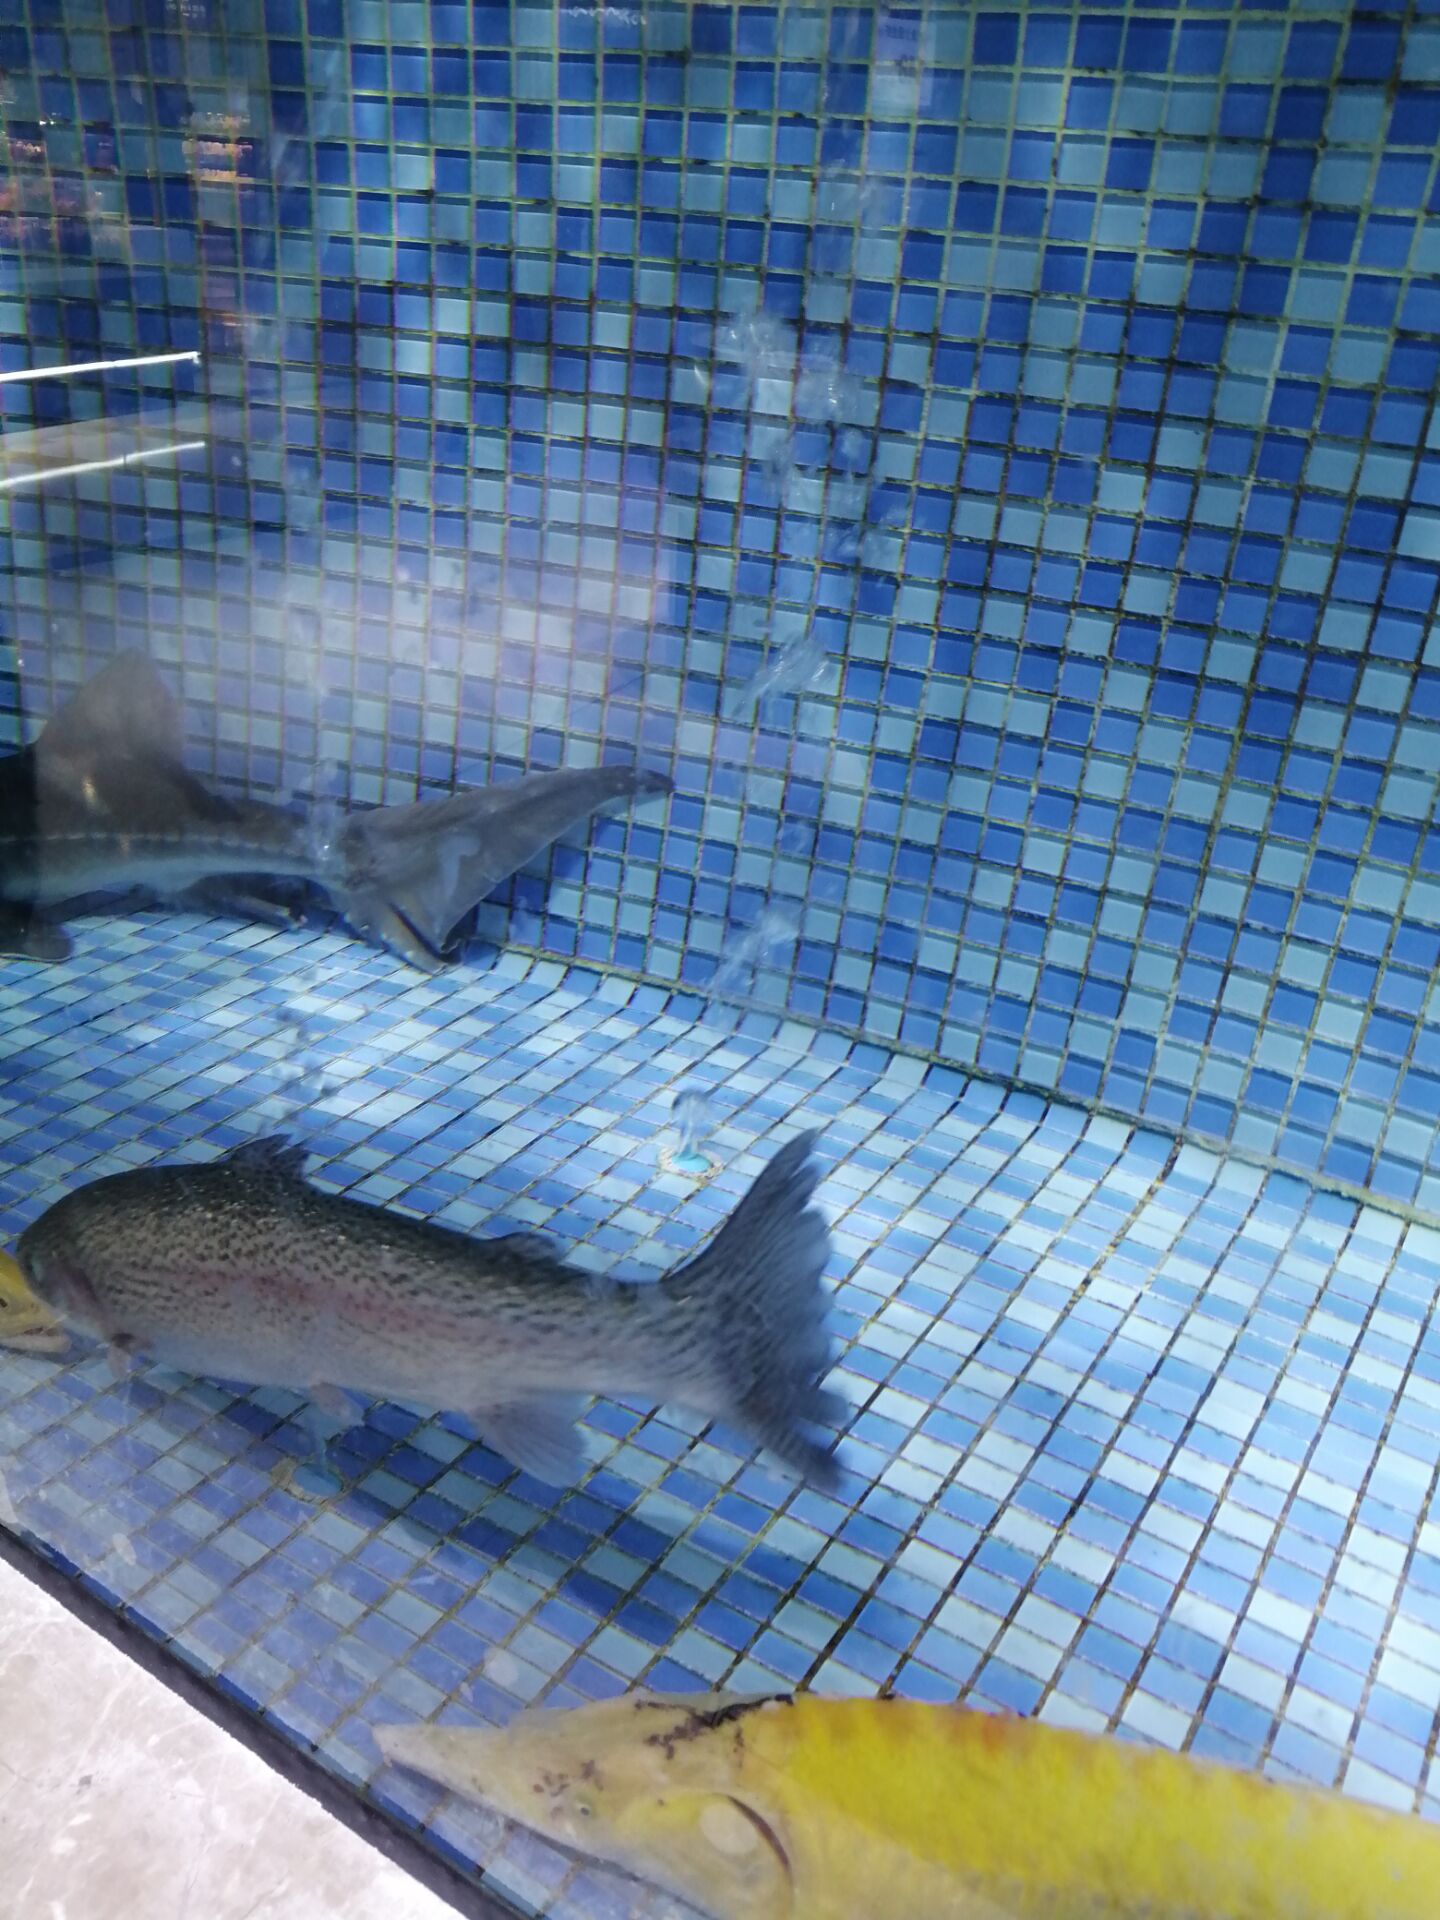 宁波象山小黄鱼全人工苗种繁育500余万尾 产业链产值达1.05亿元